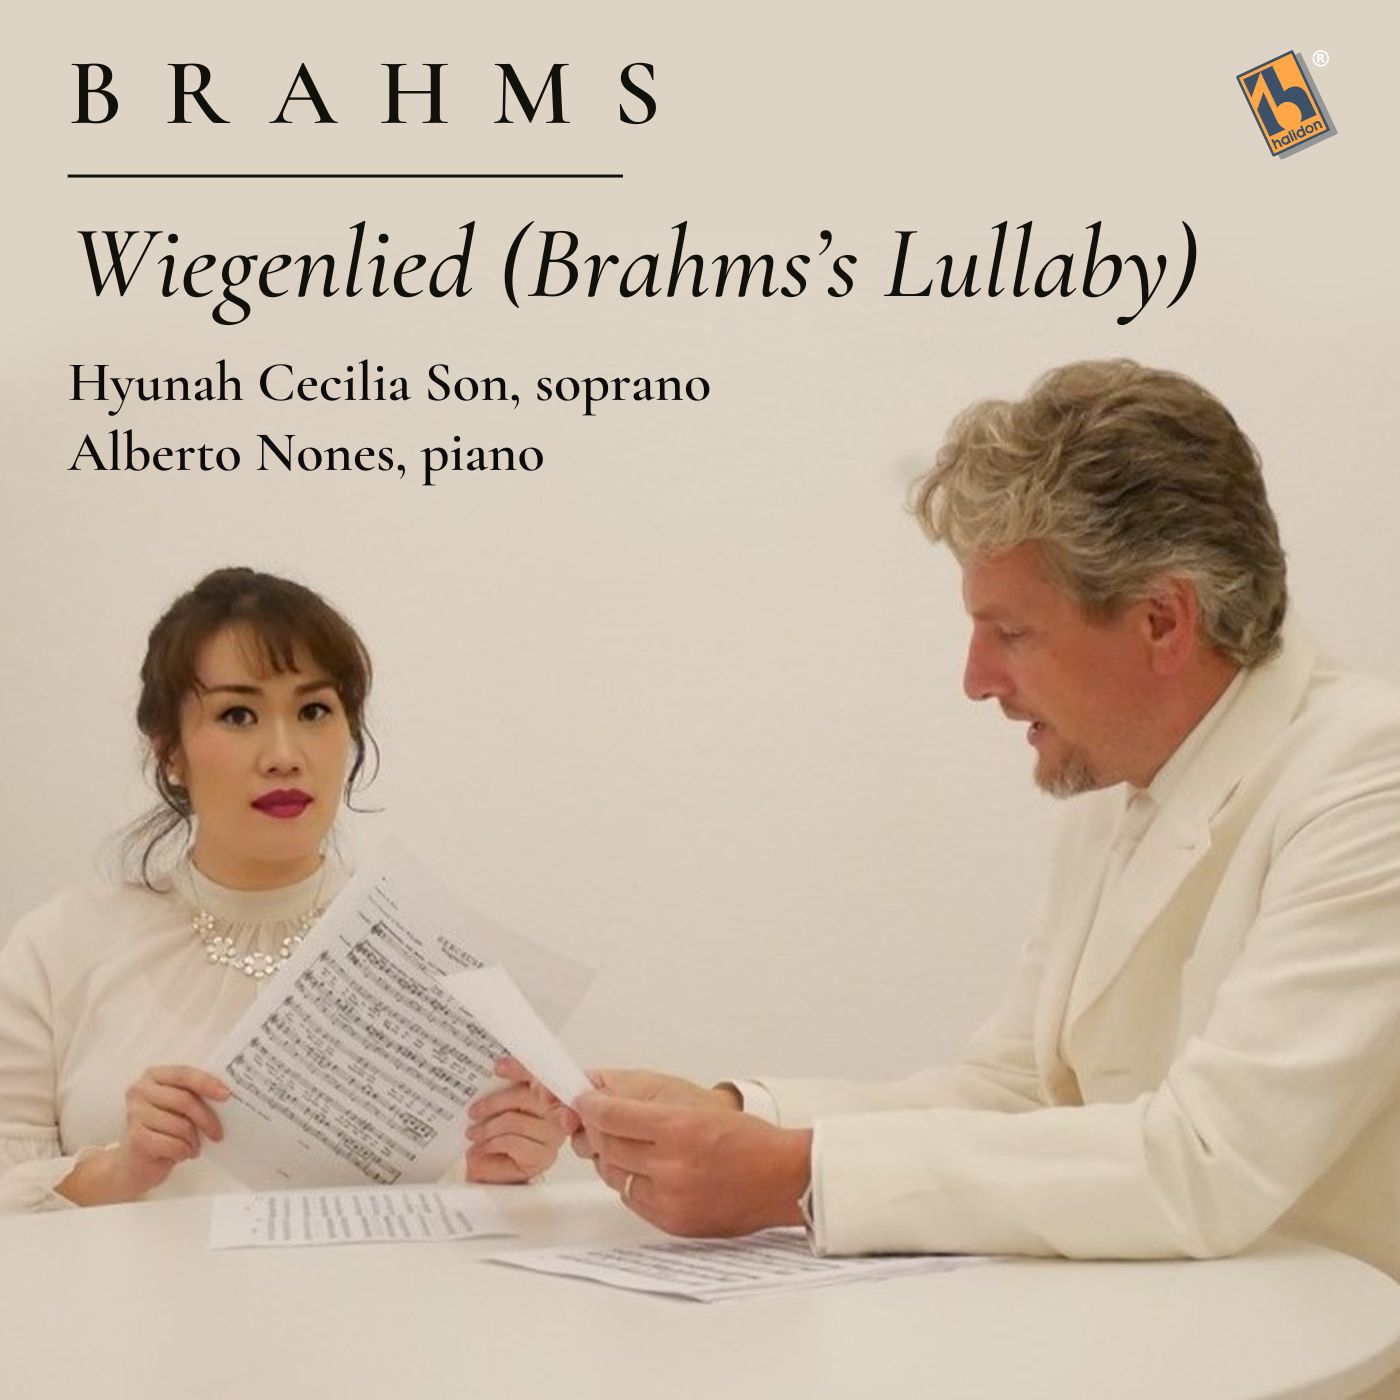 Brahms: 5 Songs, Op. 49: No. 4, Wiegenlied (Brahms's Lullaby)